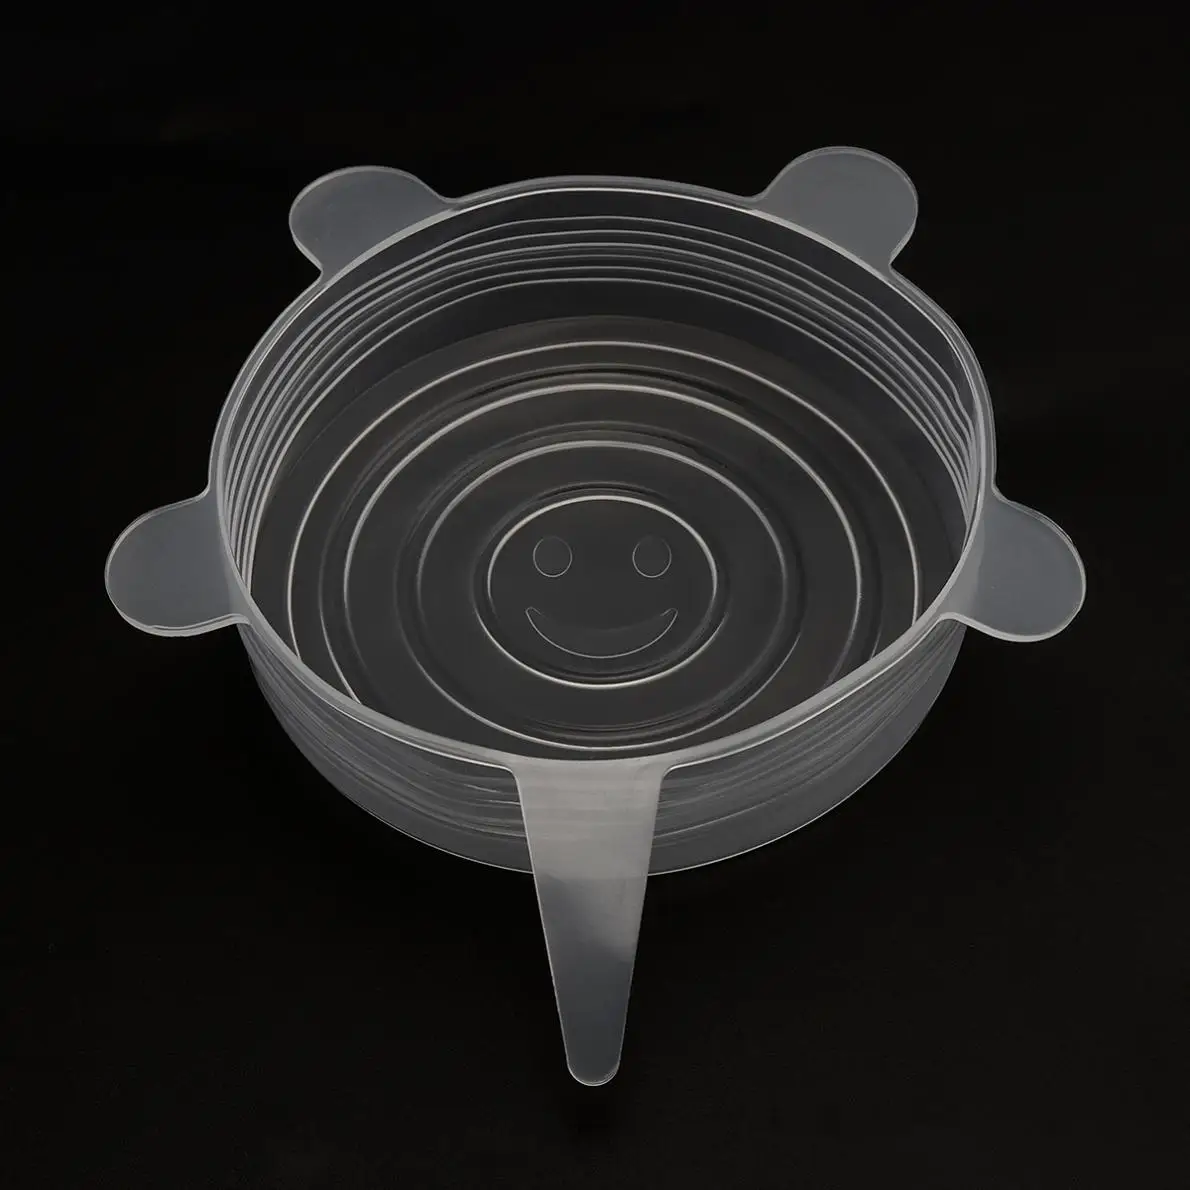 5 шт./лот, утолщенная универсальная круговая силиконовая растягивающаяся Крышка для хранения еды, крышка для чаши, кастрюля для-60~ 140 градусов Цельсия